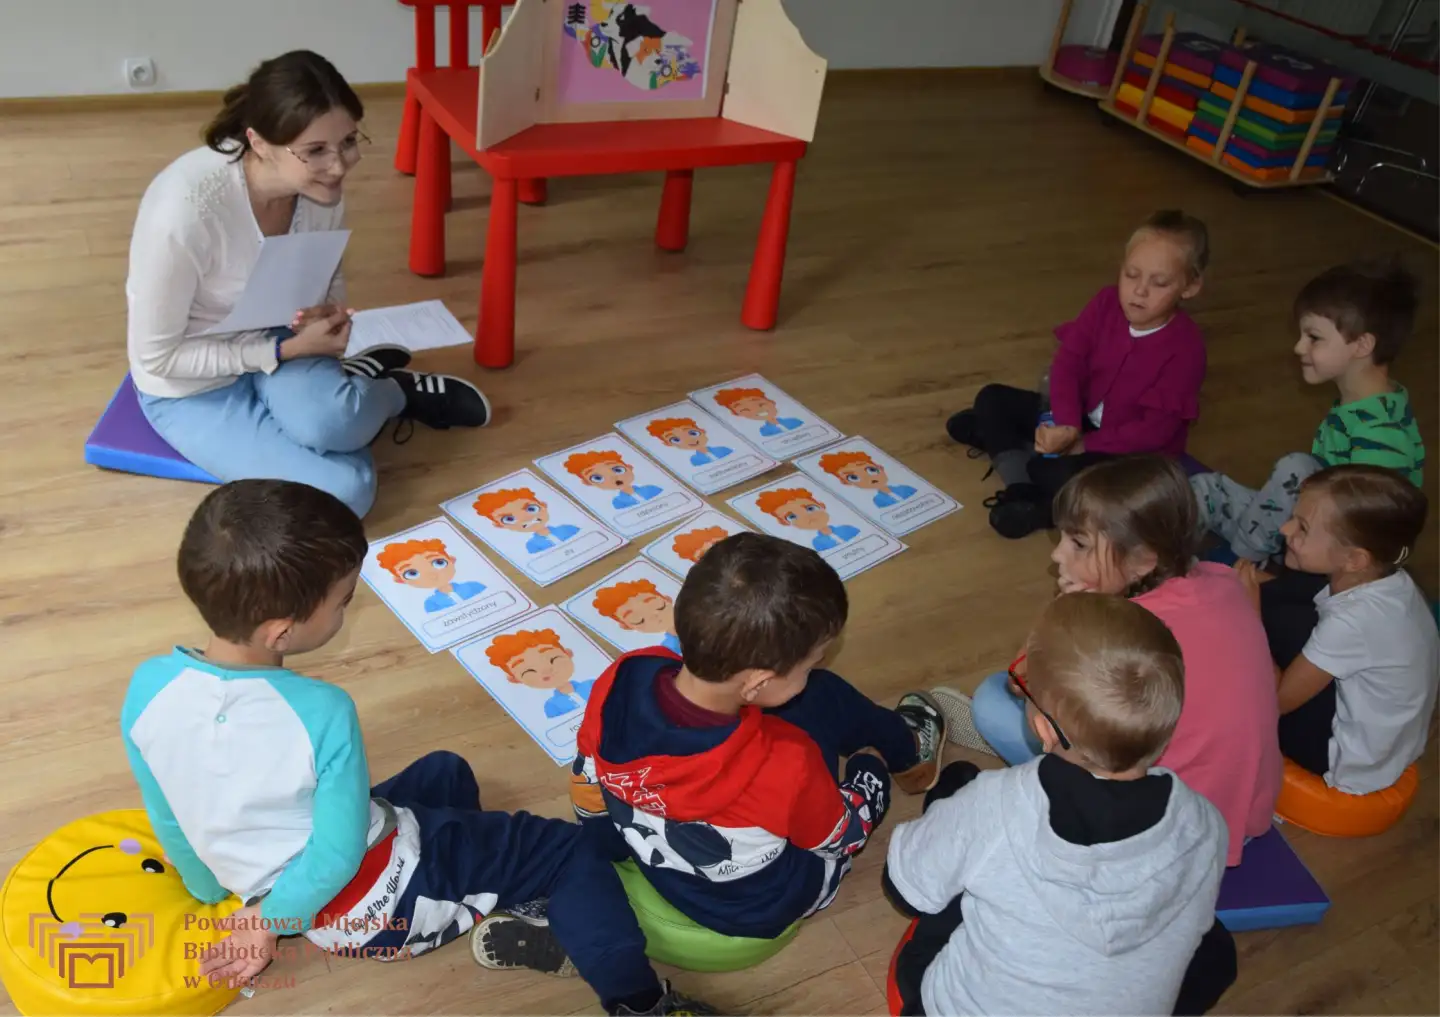 Dzieci siedzące na podłodze wokół kartek przedstawiających twarz chłopca z rudymi włosami. Każdy obrazek przedstawia inną emocję. Obok siedzi Pani prowadząca, uśmiechająca się do dzieci